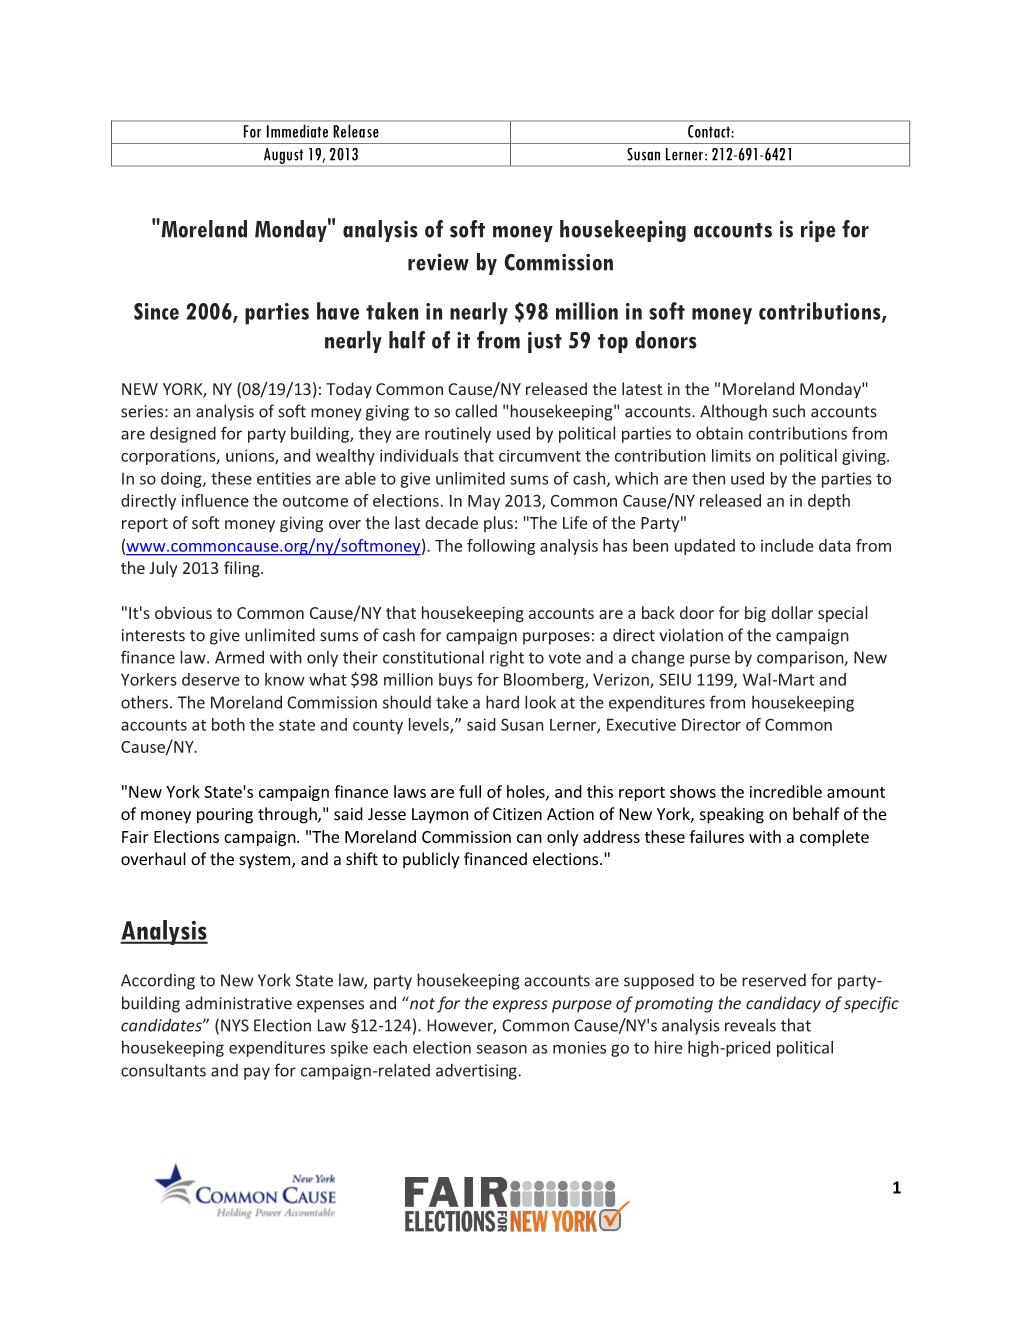 Moreland Monday Housekeeping Release 8-19 -- PDF Version